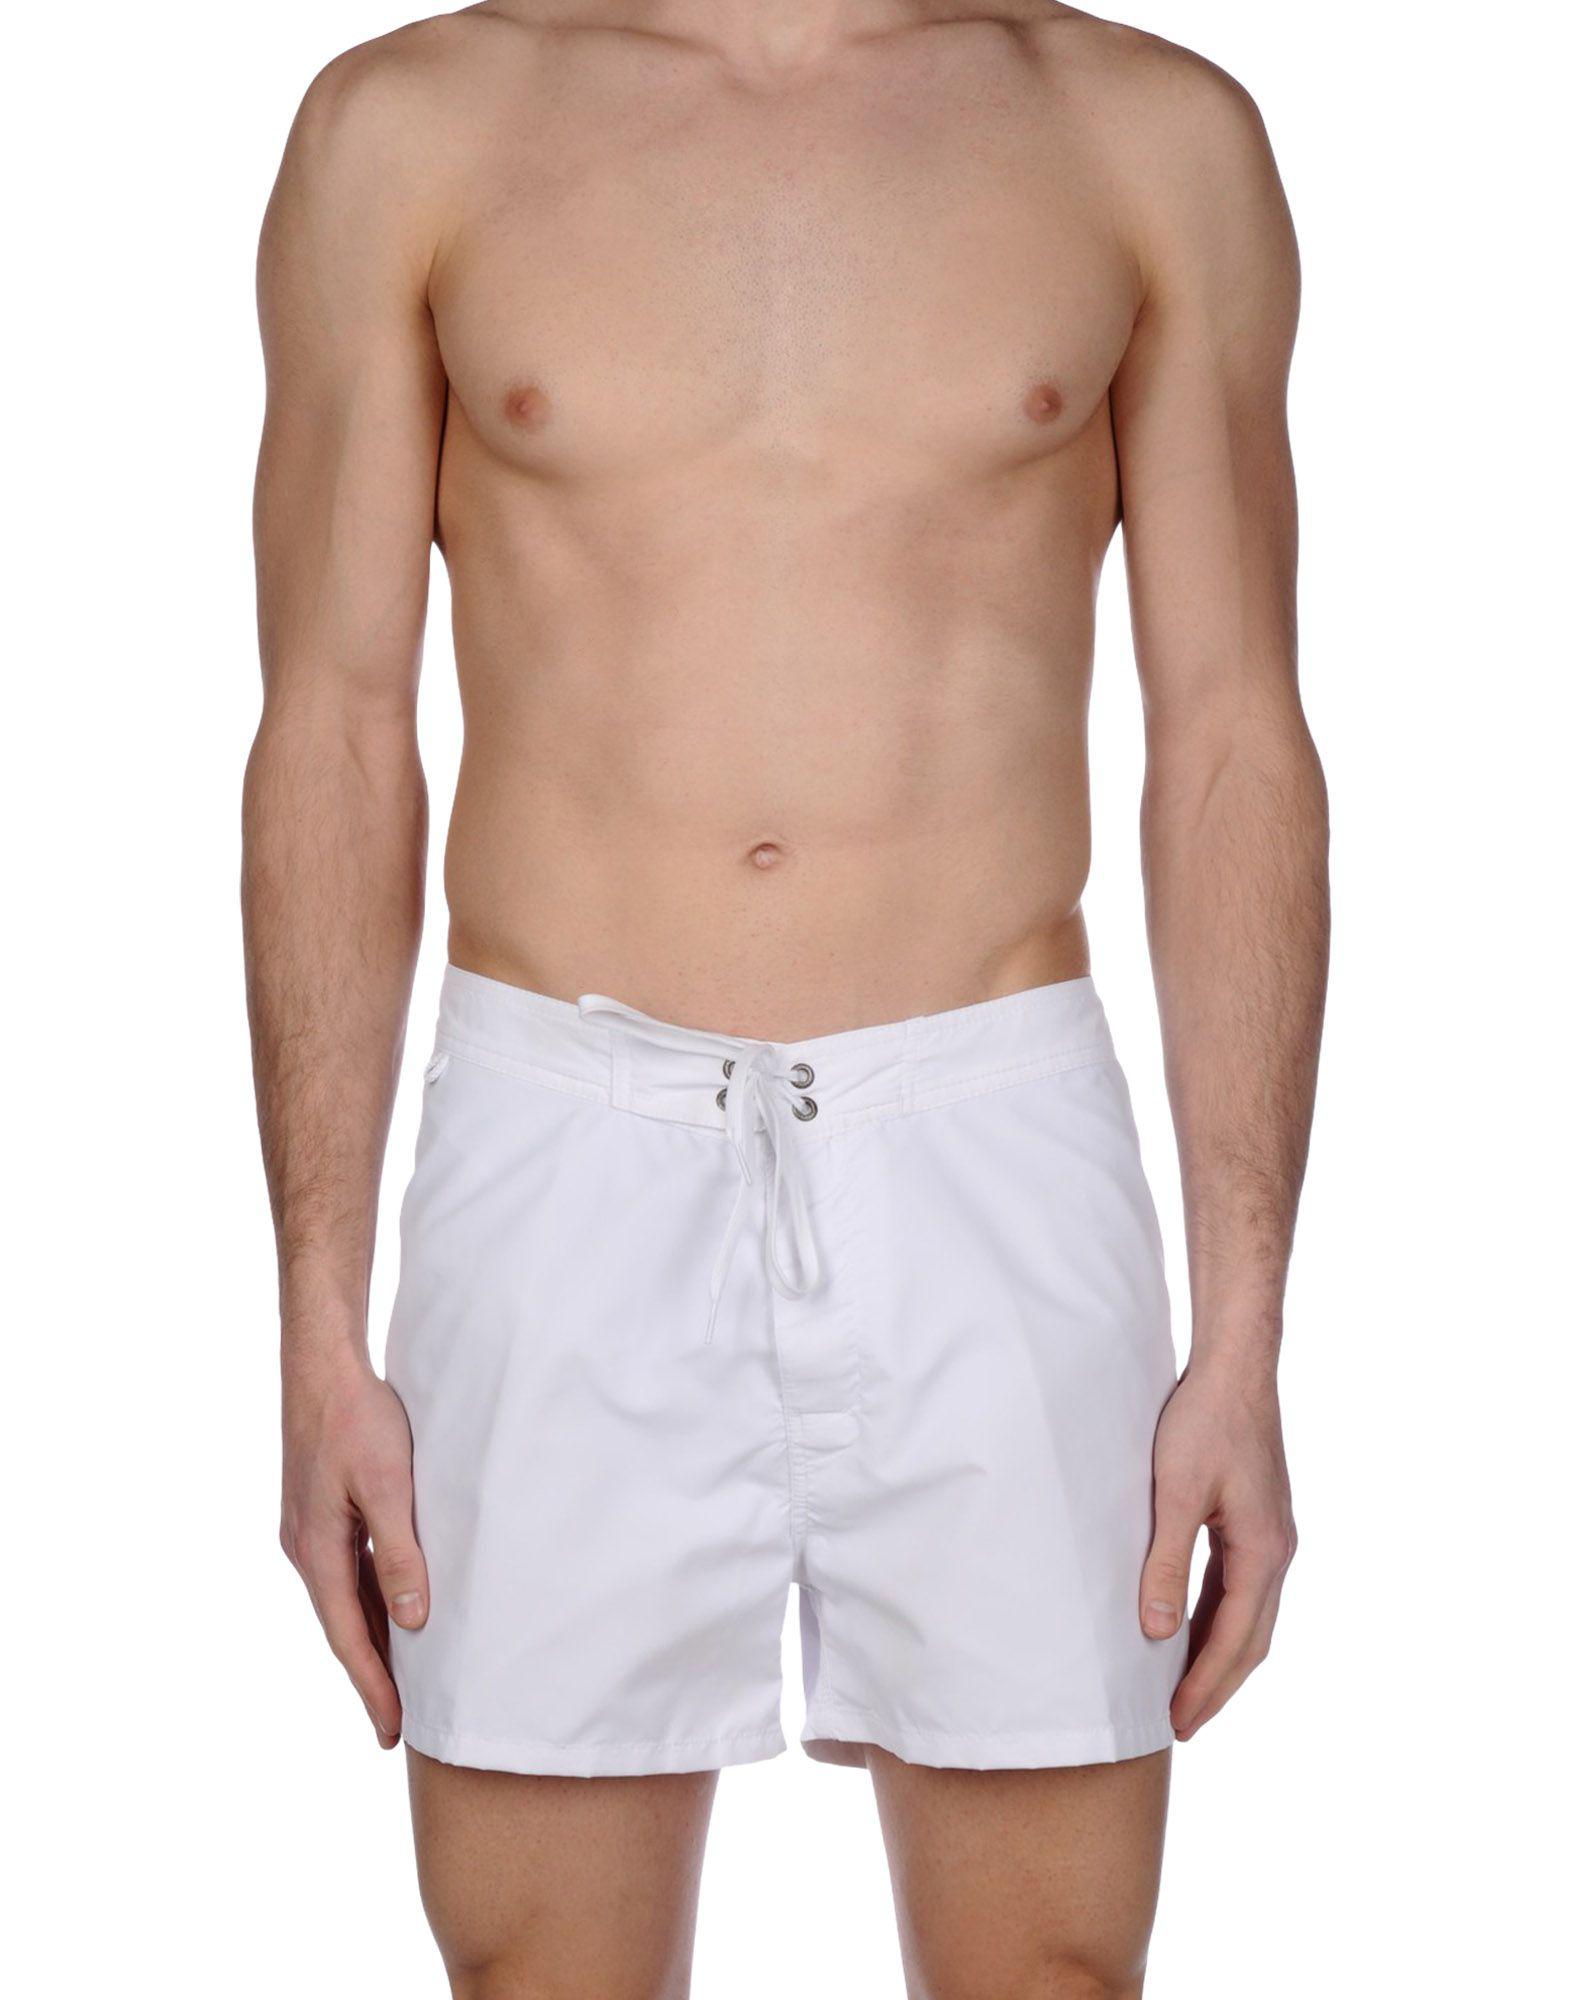 Lyst - Sundek Swimming Trunks in White for Men